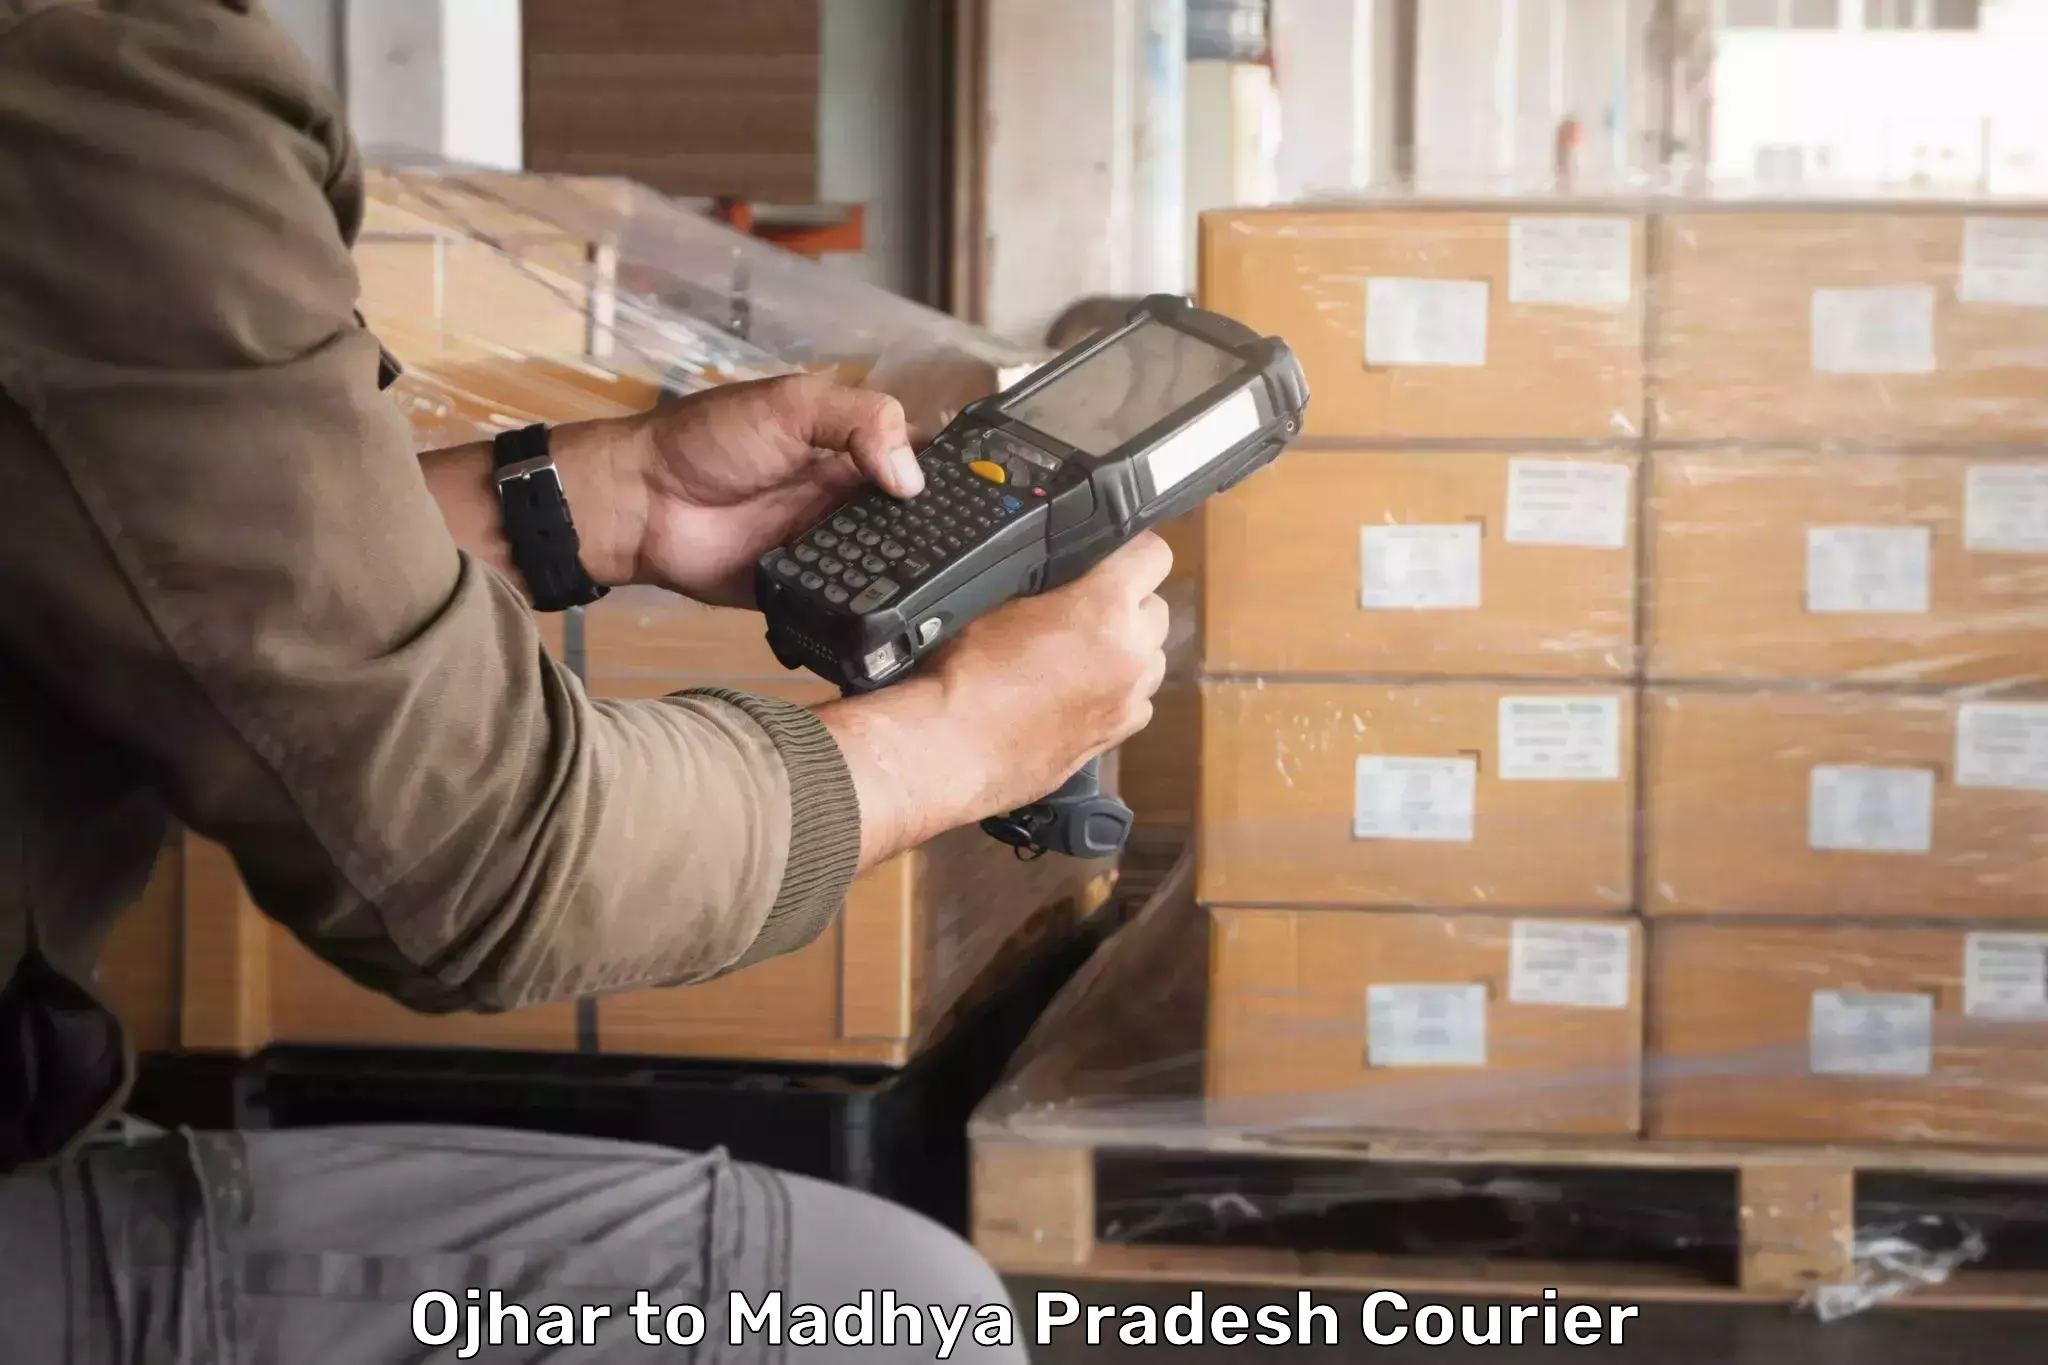 Cargo courier service Ojhar to Ganj Basoda